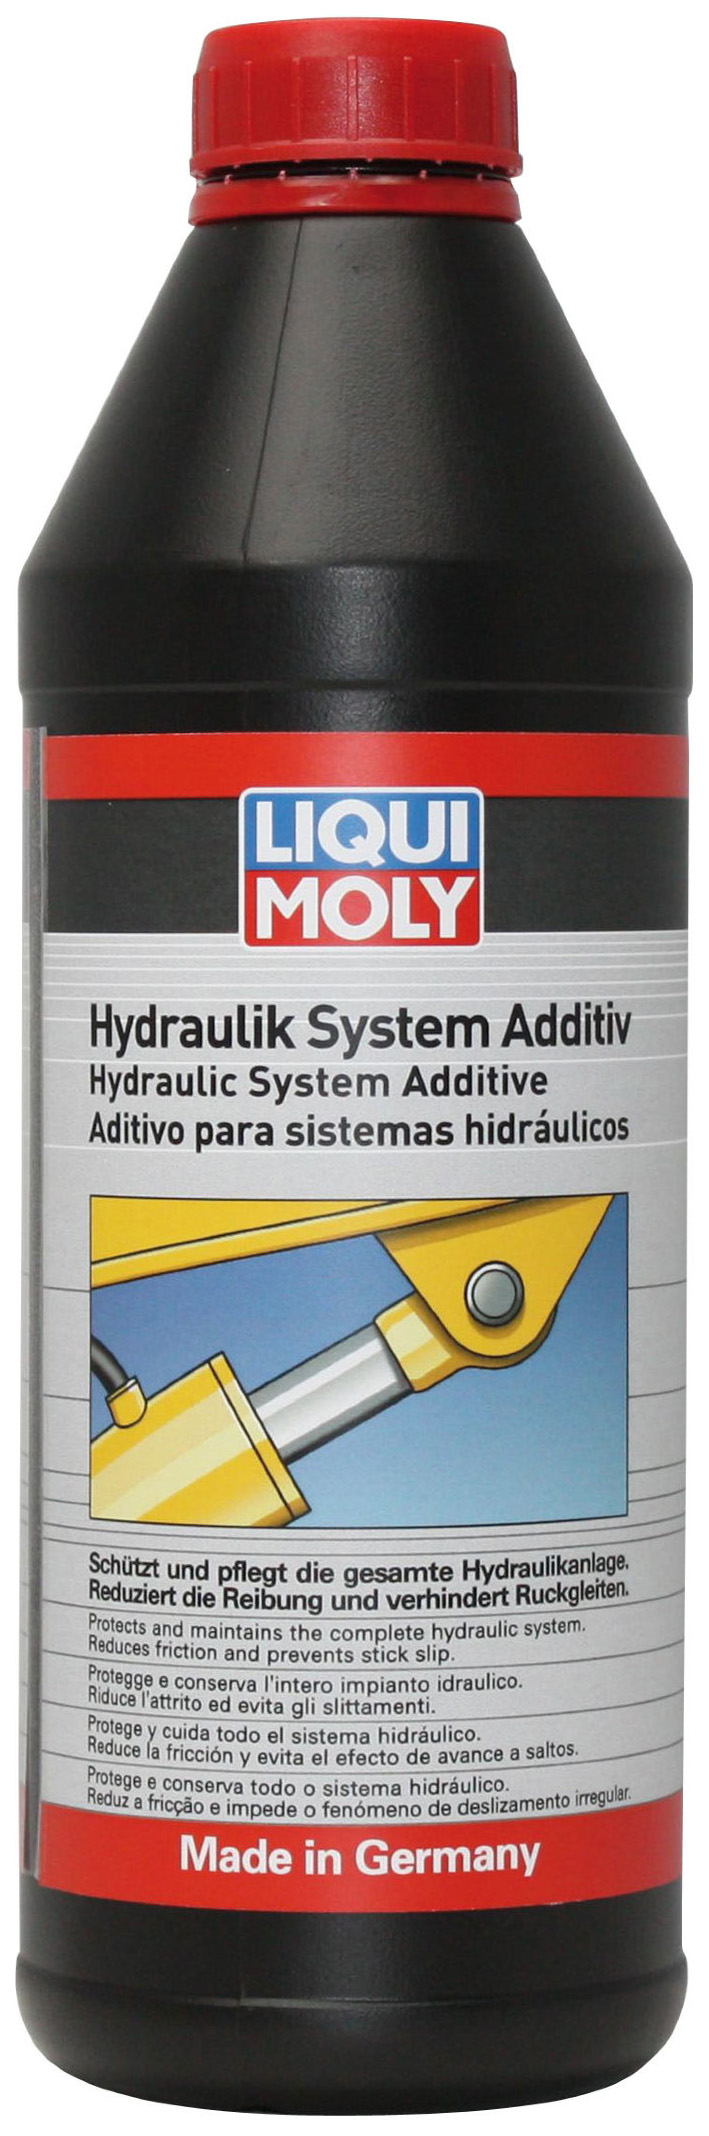 Присадка для гидравлических систем LIQUI MOLY Hydraulik System Additiv 1 л